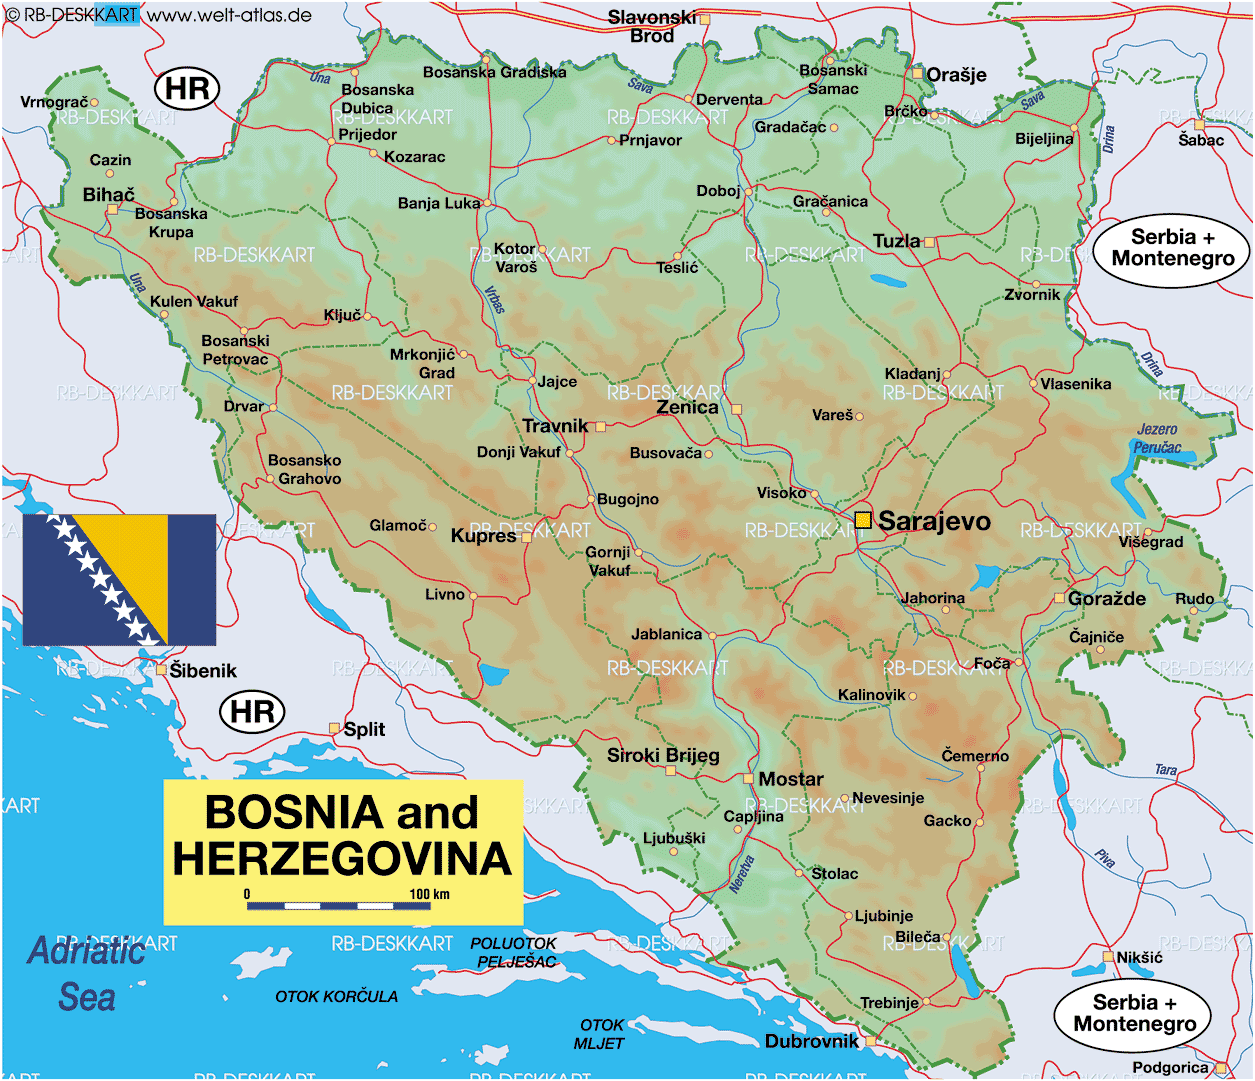 Karte von Bosnien und Herzegowina (Land / Staat)